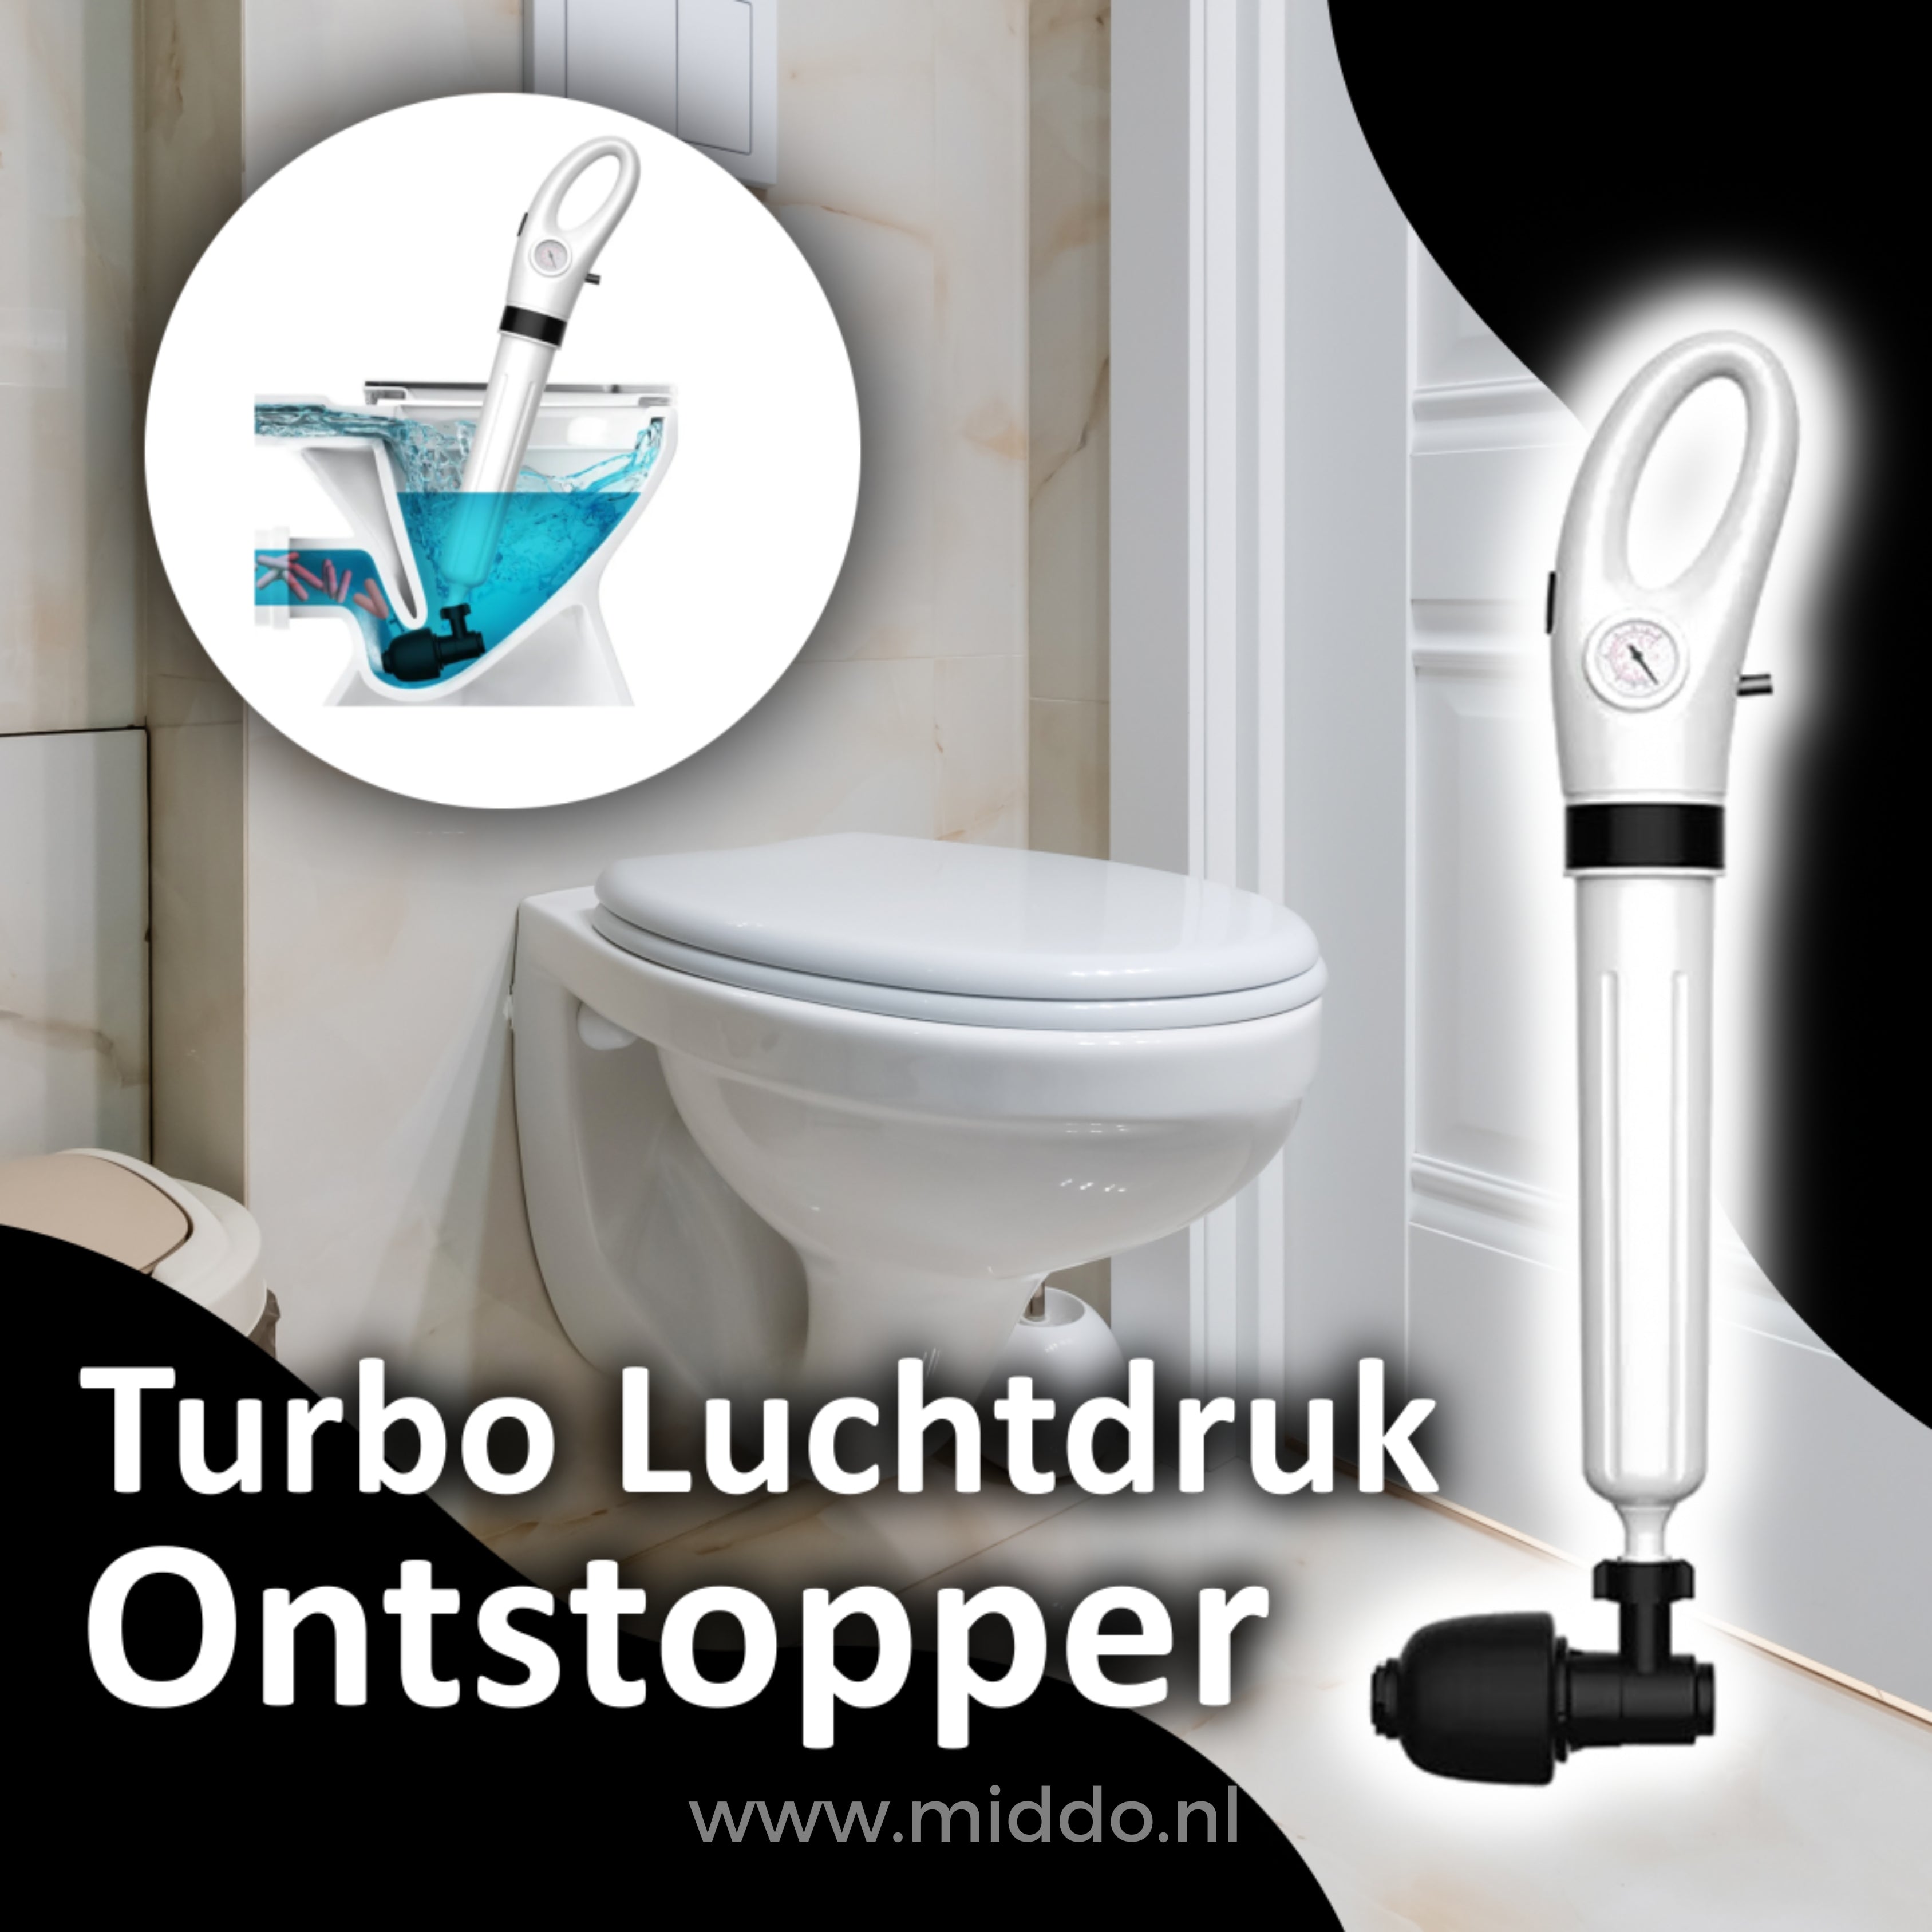 Turbo luchtdruk ontstopper in gebruik op een toilet.